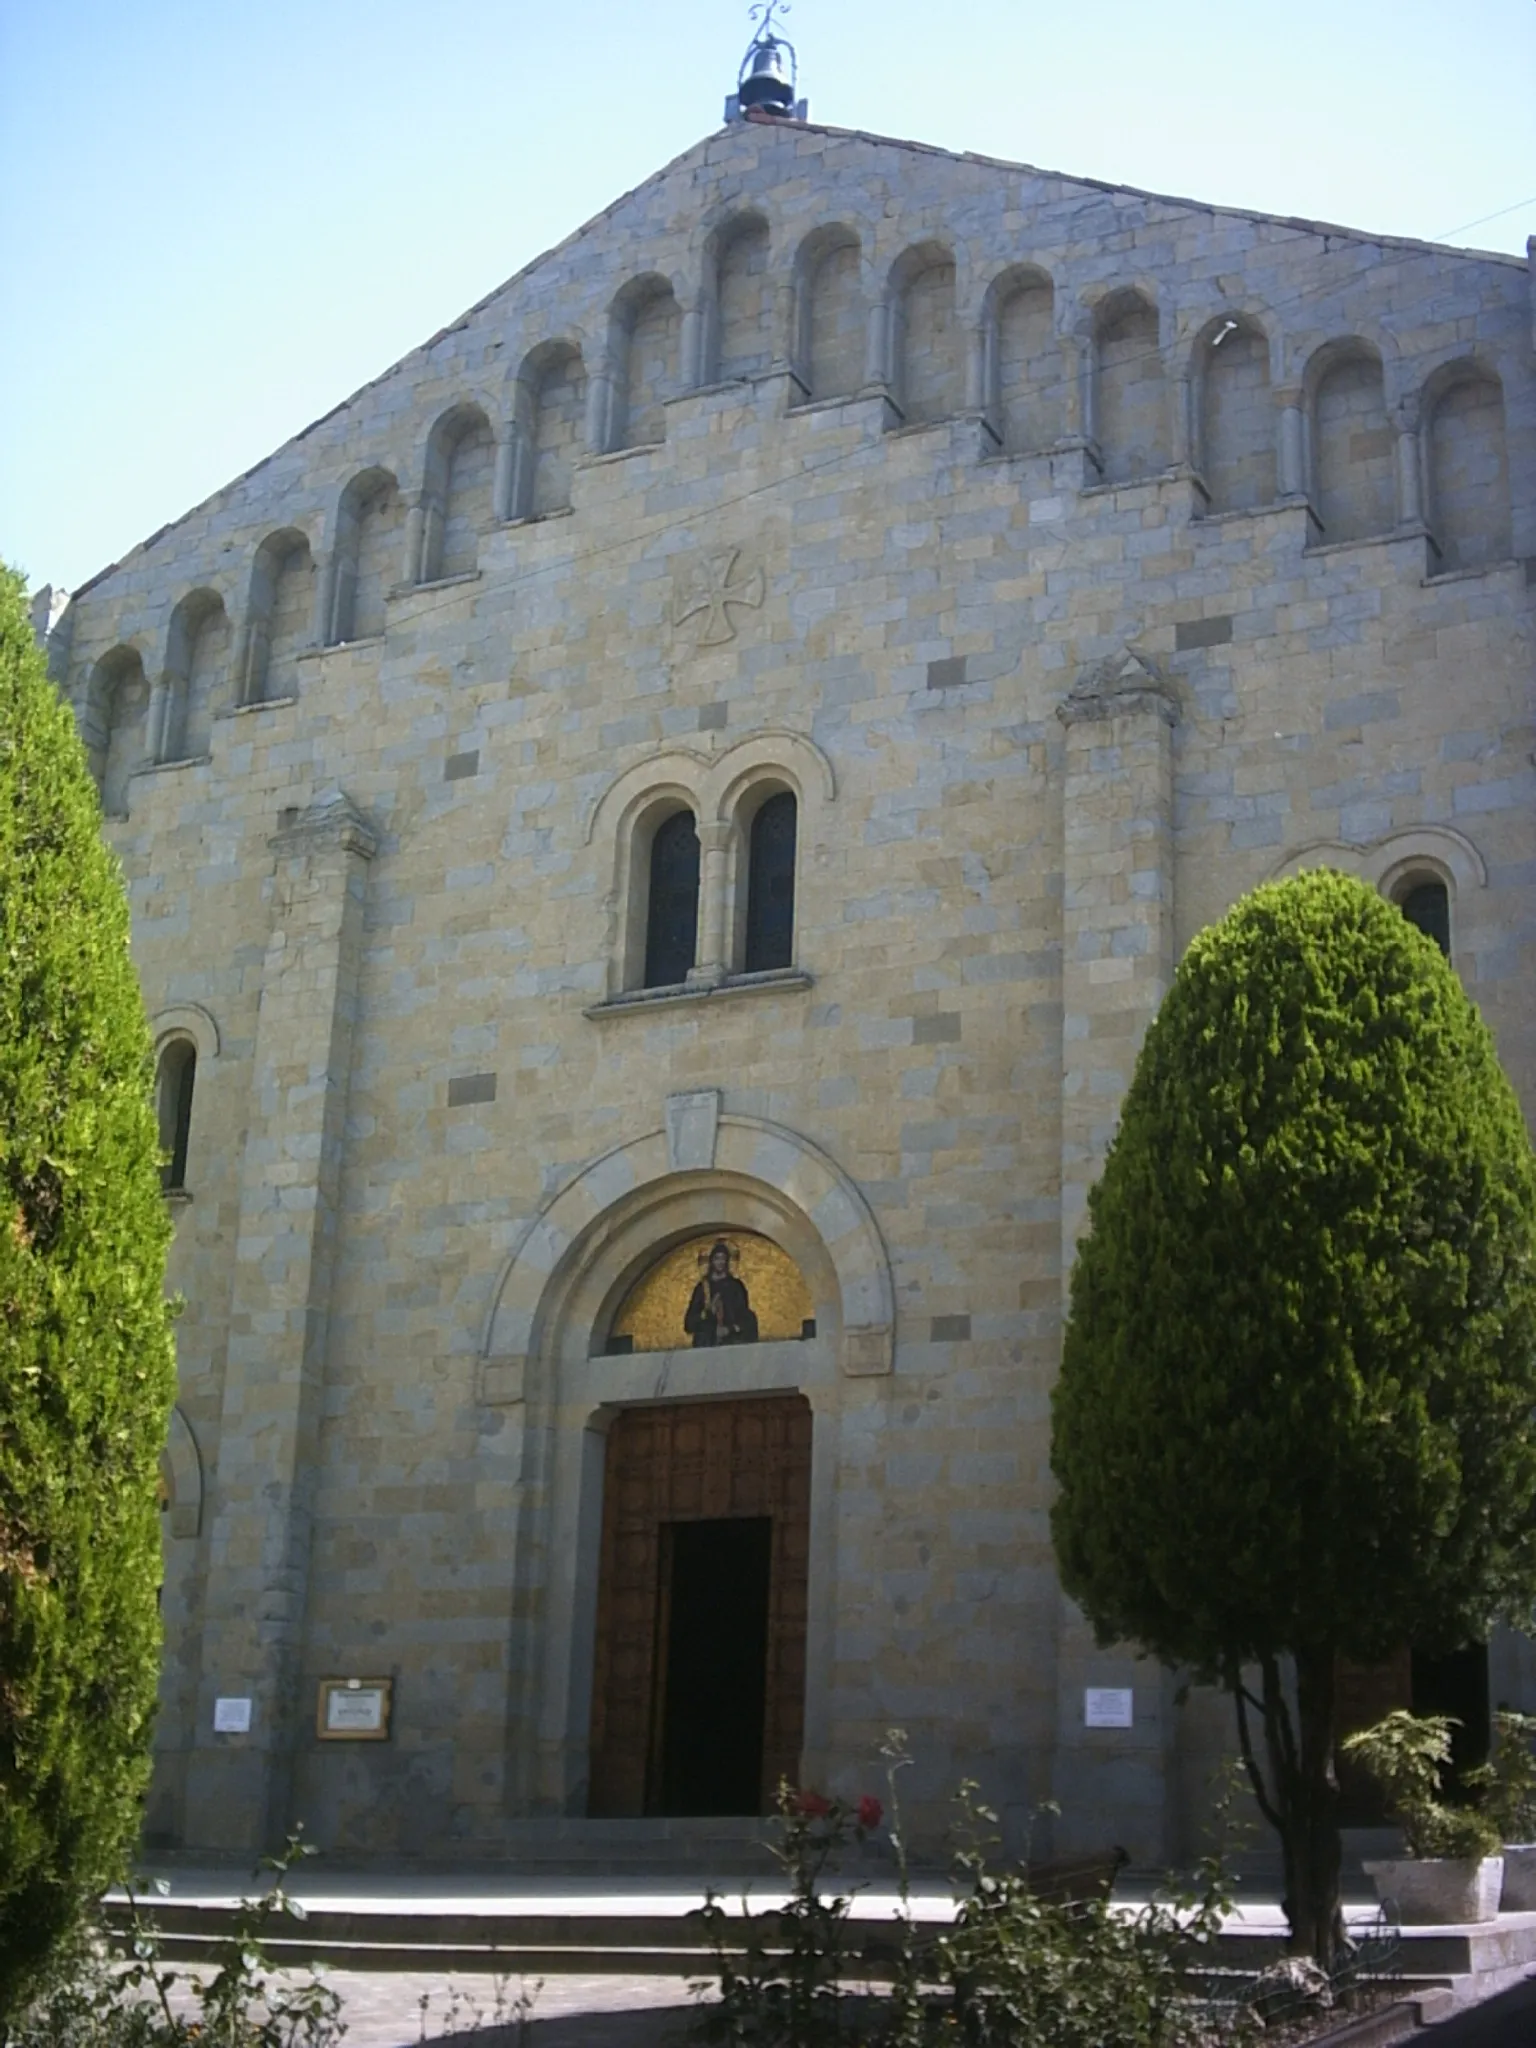 Photo showing: autore: Borto_god
descrizione: la chiesa di Zocca (modena)